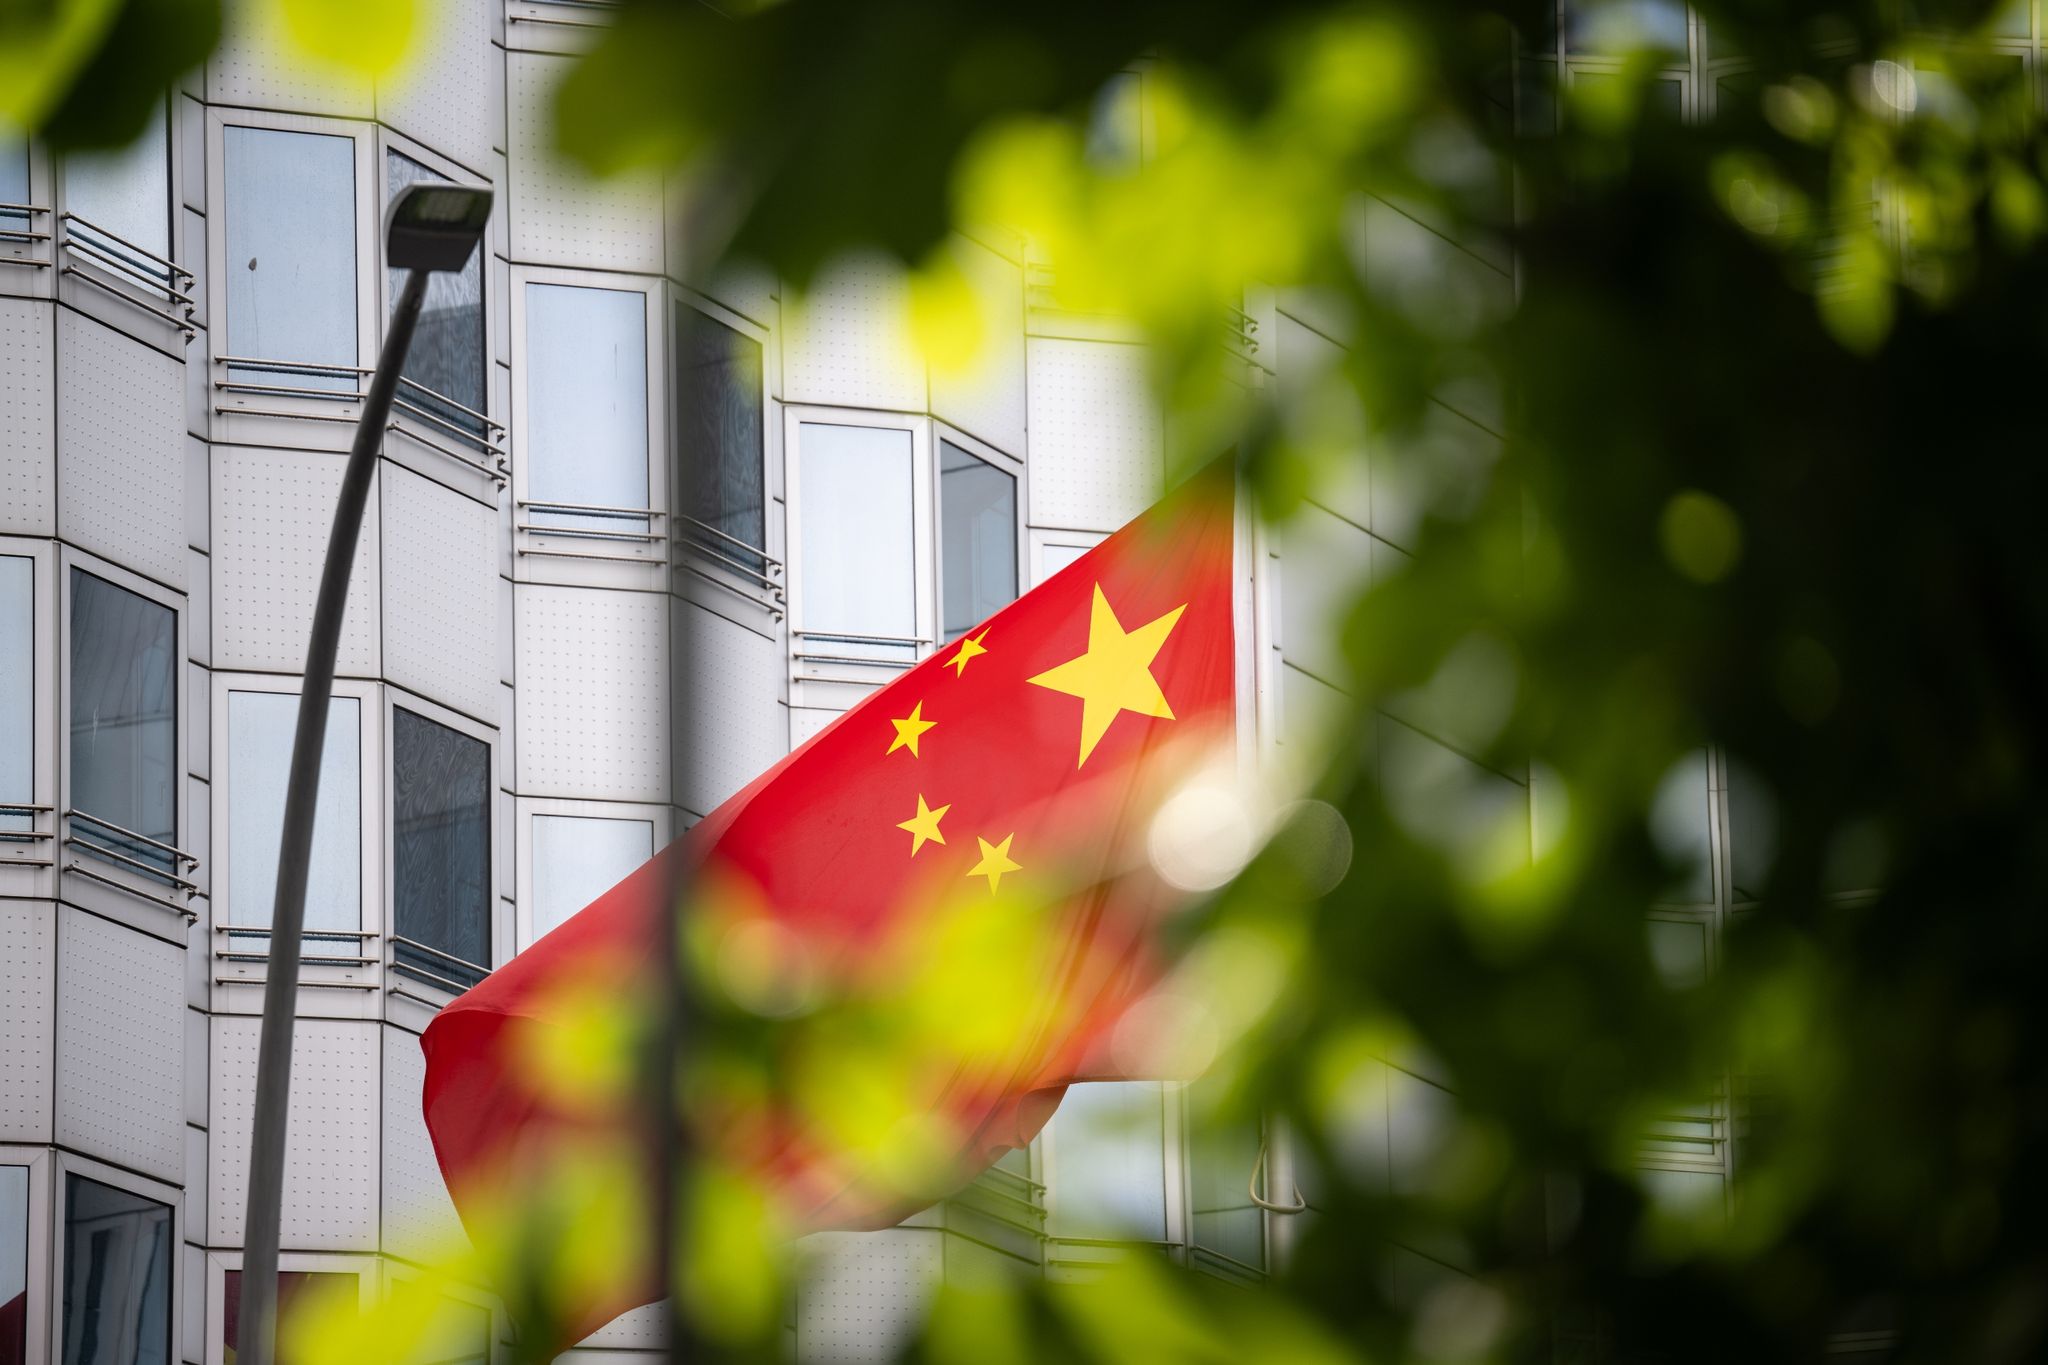 China fordert Deutschland auf, «den Spionagevorwurf auszunutzen, um das Bild von China politisch zu manipulieren und China zu diffamieren.»